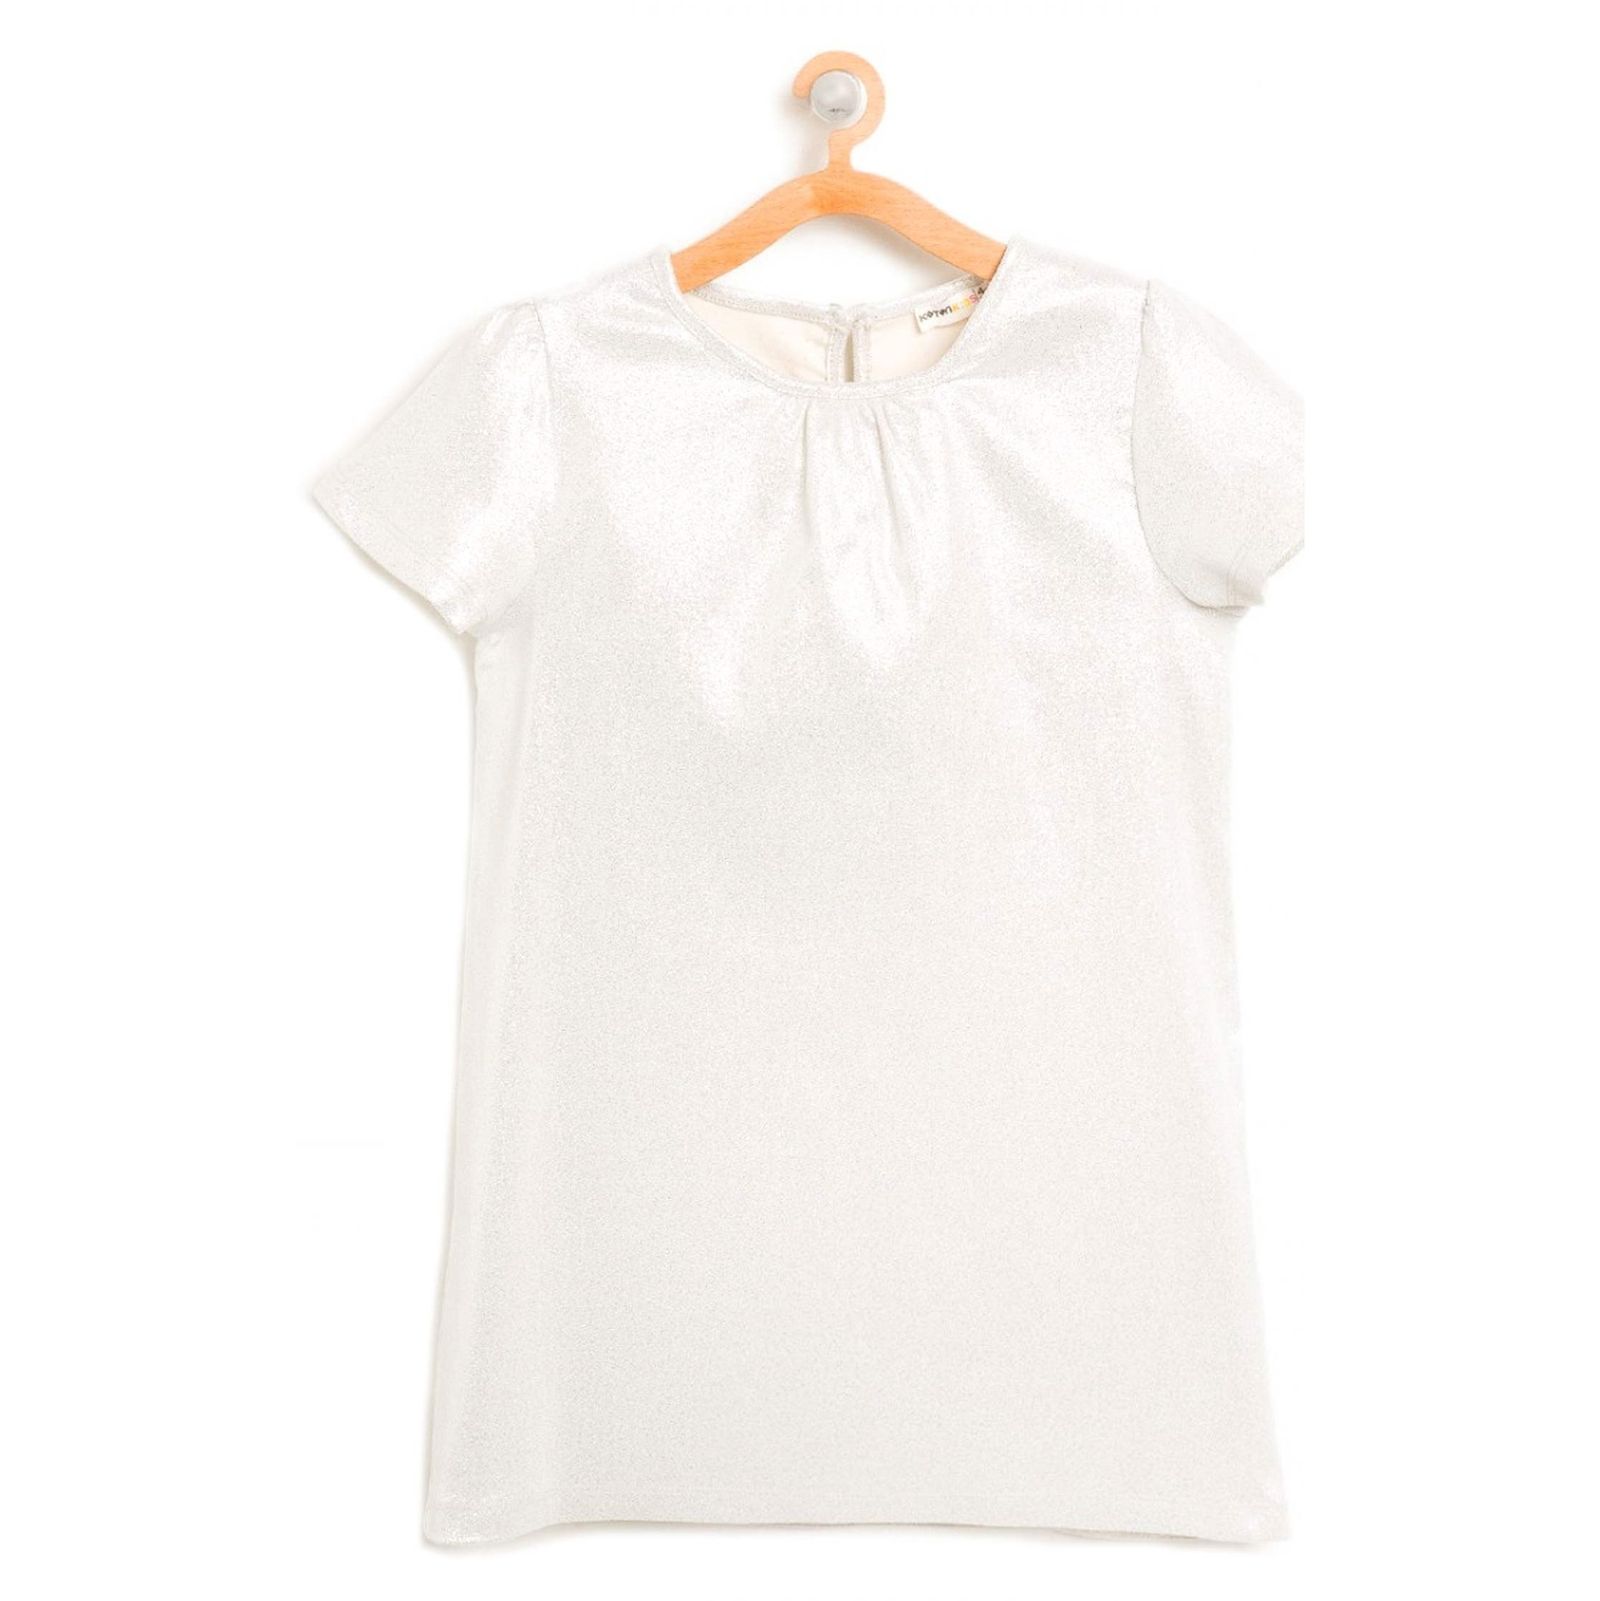 پیراهن روزمره دخترانه - کوتون - طوسي روشن - 1